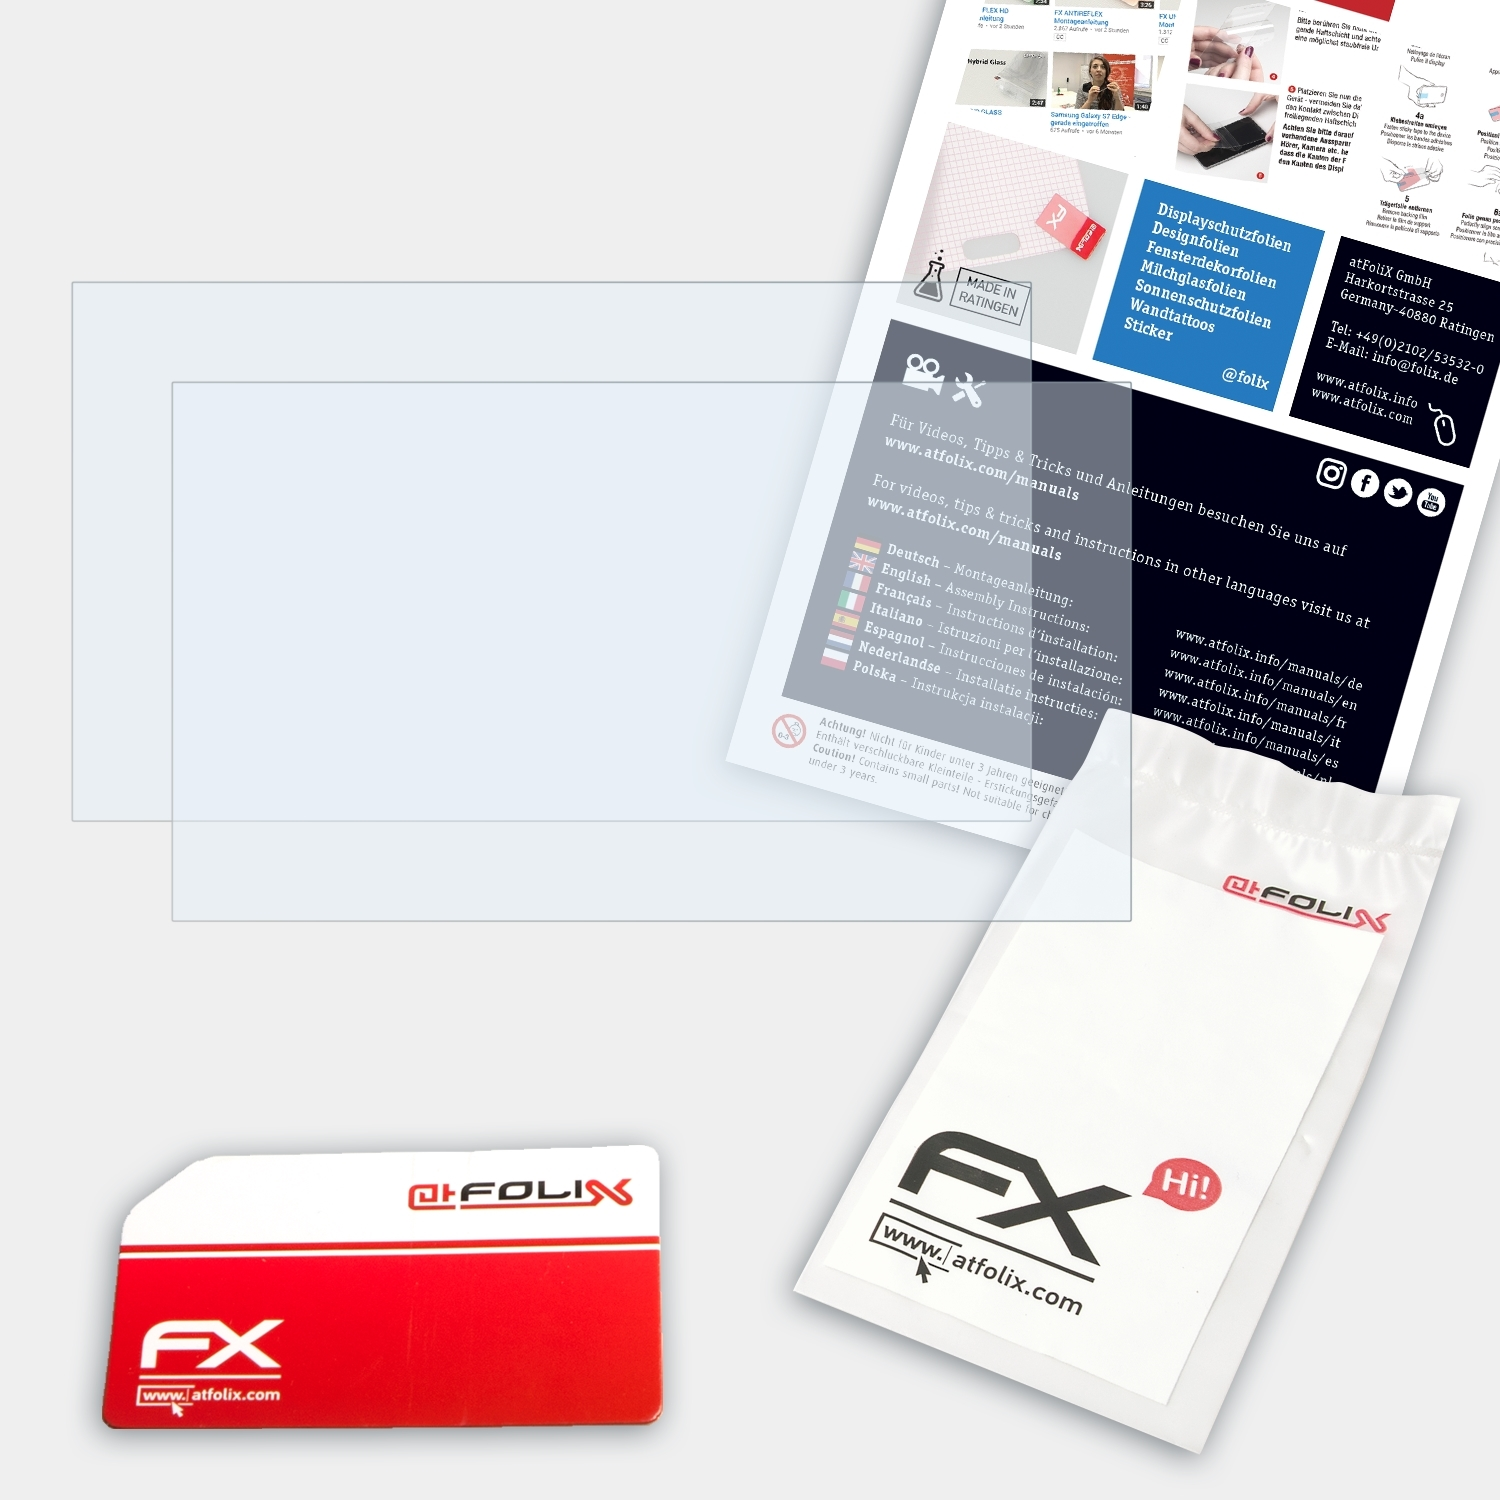 ATFOLIX 2x FX-Clear Displayschutz(für Acer (15,6 3 Aspire A315-21 inch))